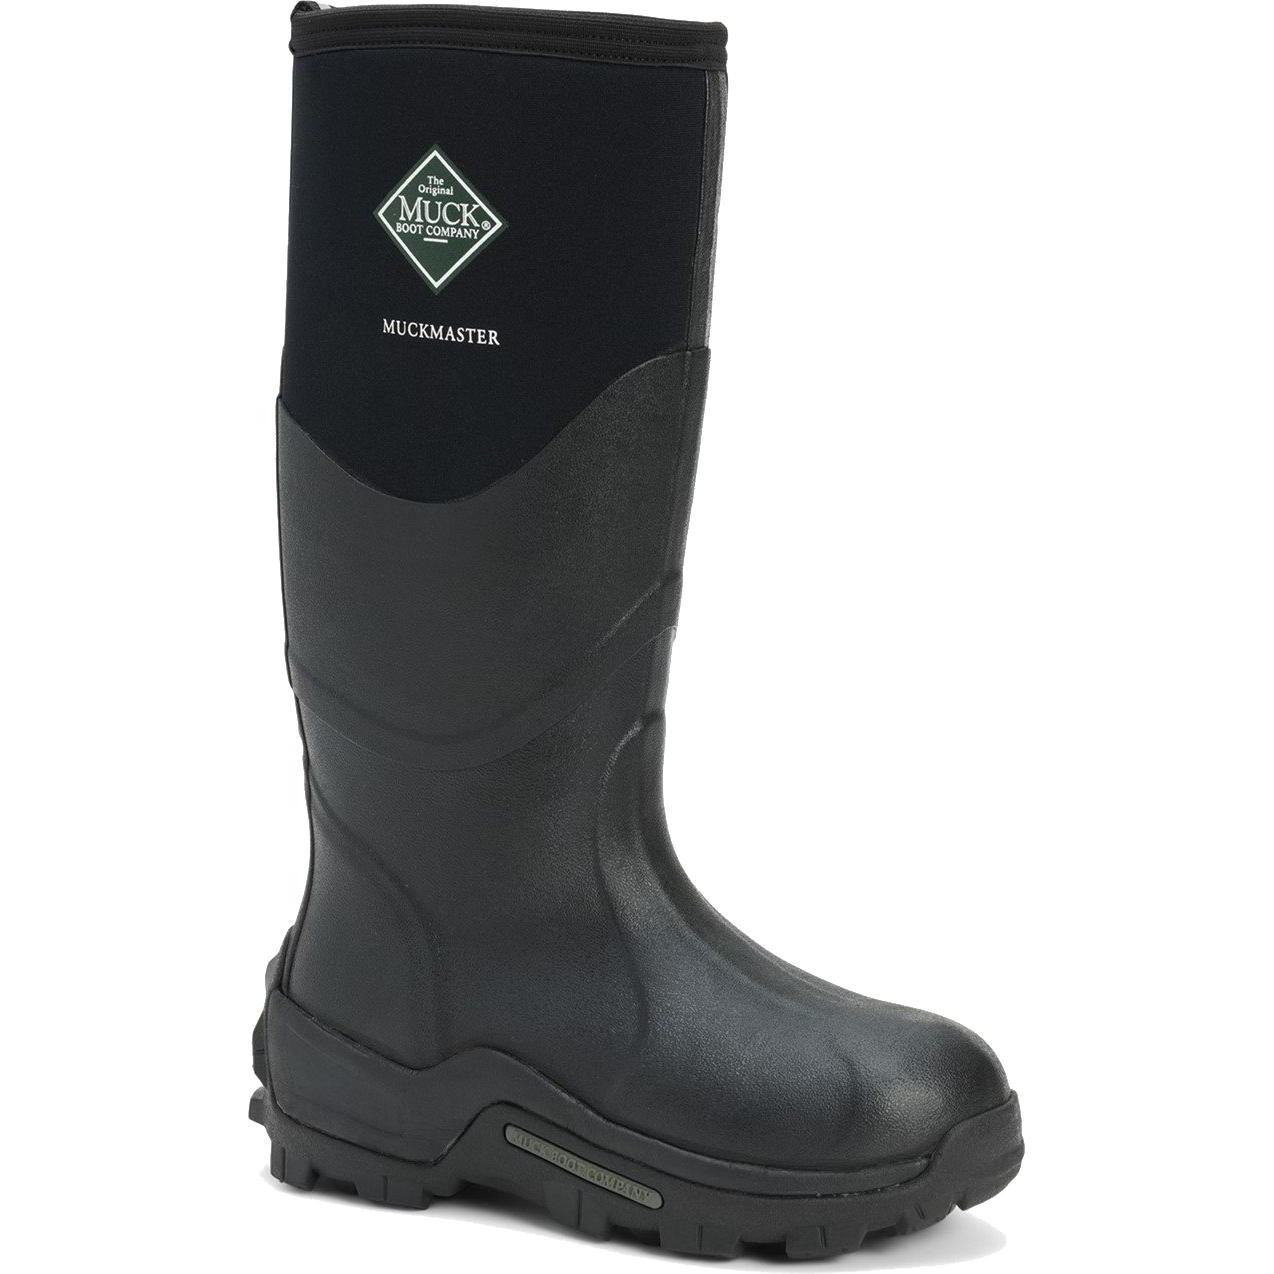 Muck Boots Mens Womens Master Neoprene Wellies Rain - UK 9 Black 2951